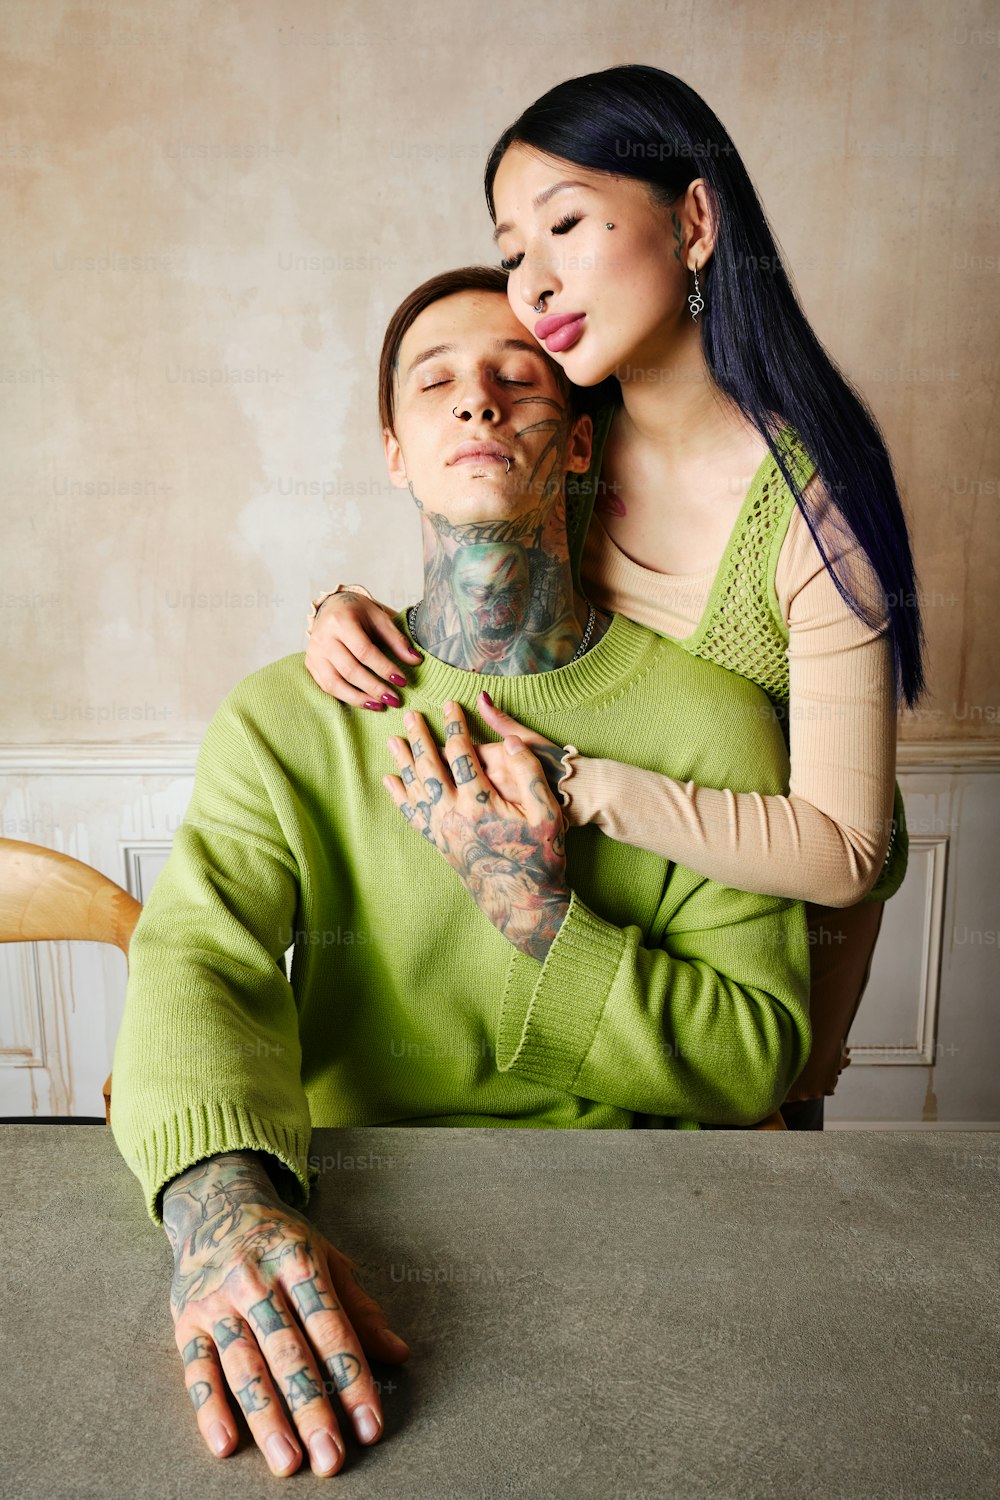 Une femme étreint un homme avec des tatouages sur le visage